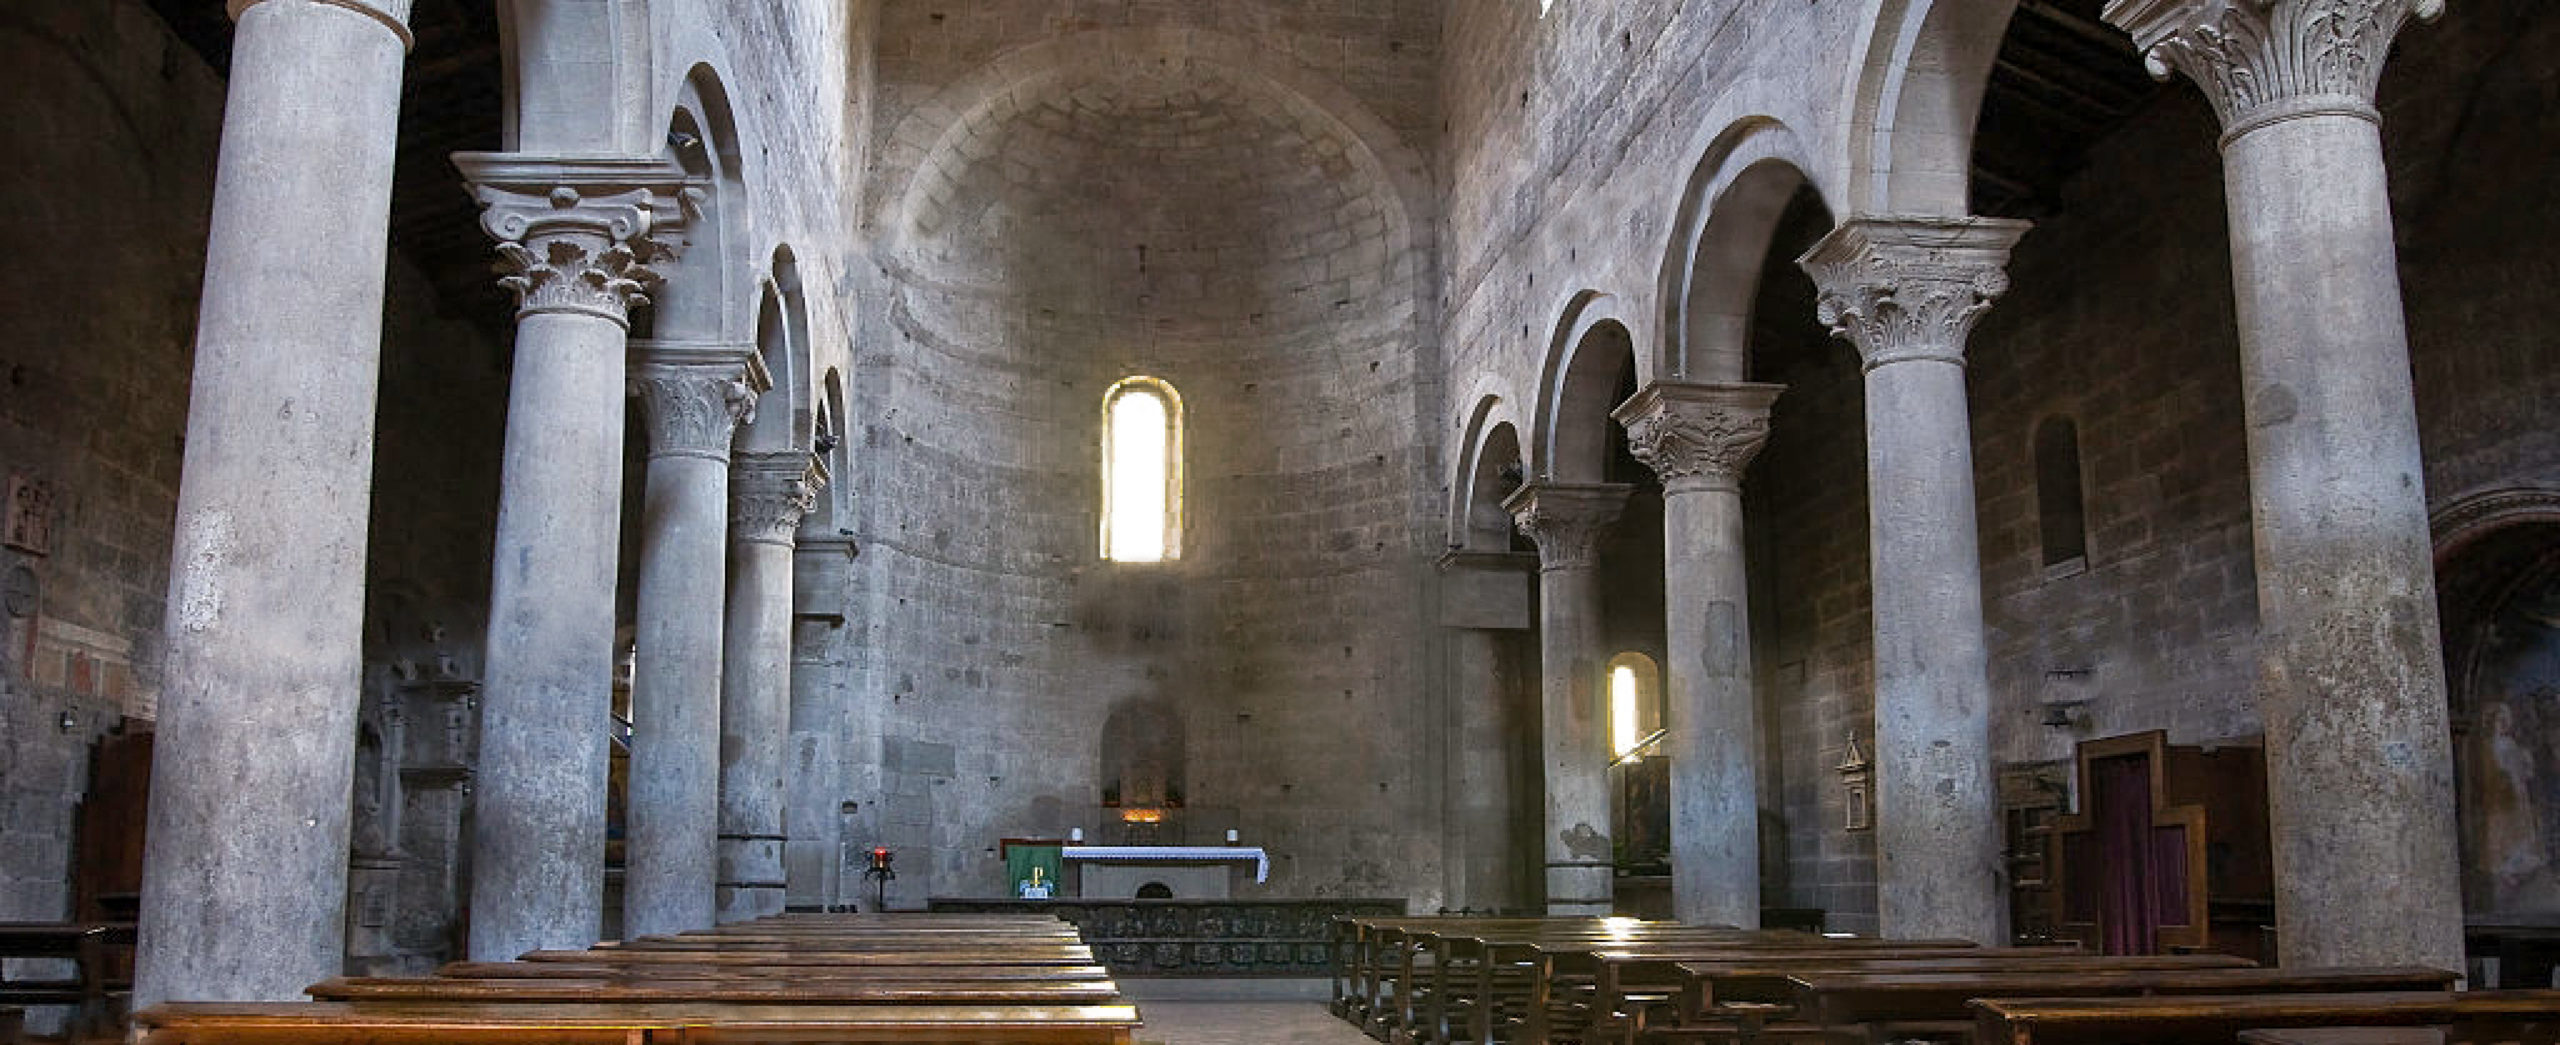 iterbo - Interno di Santa Maria Nuova - navata centrale